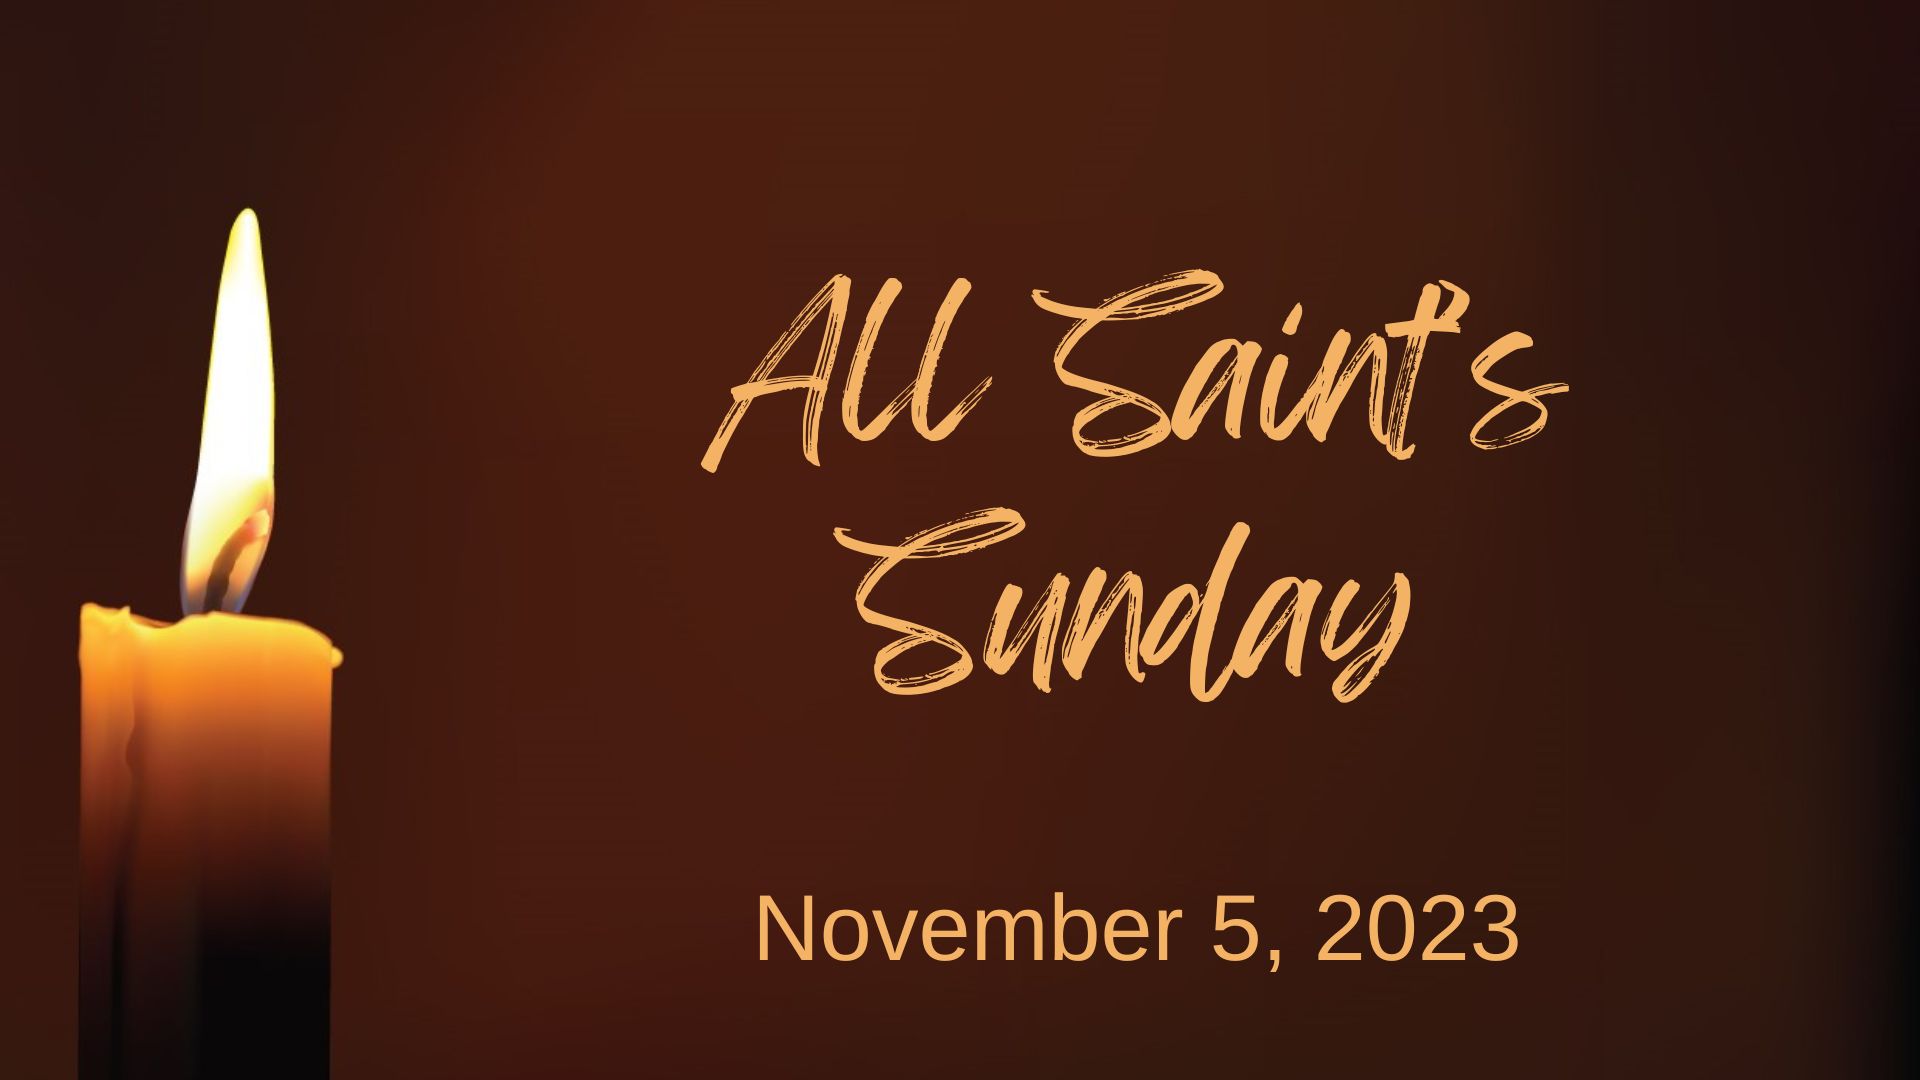 All Saint's Sunday